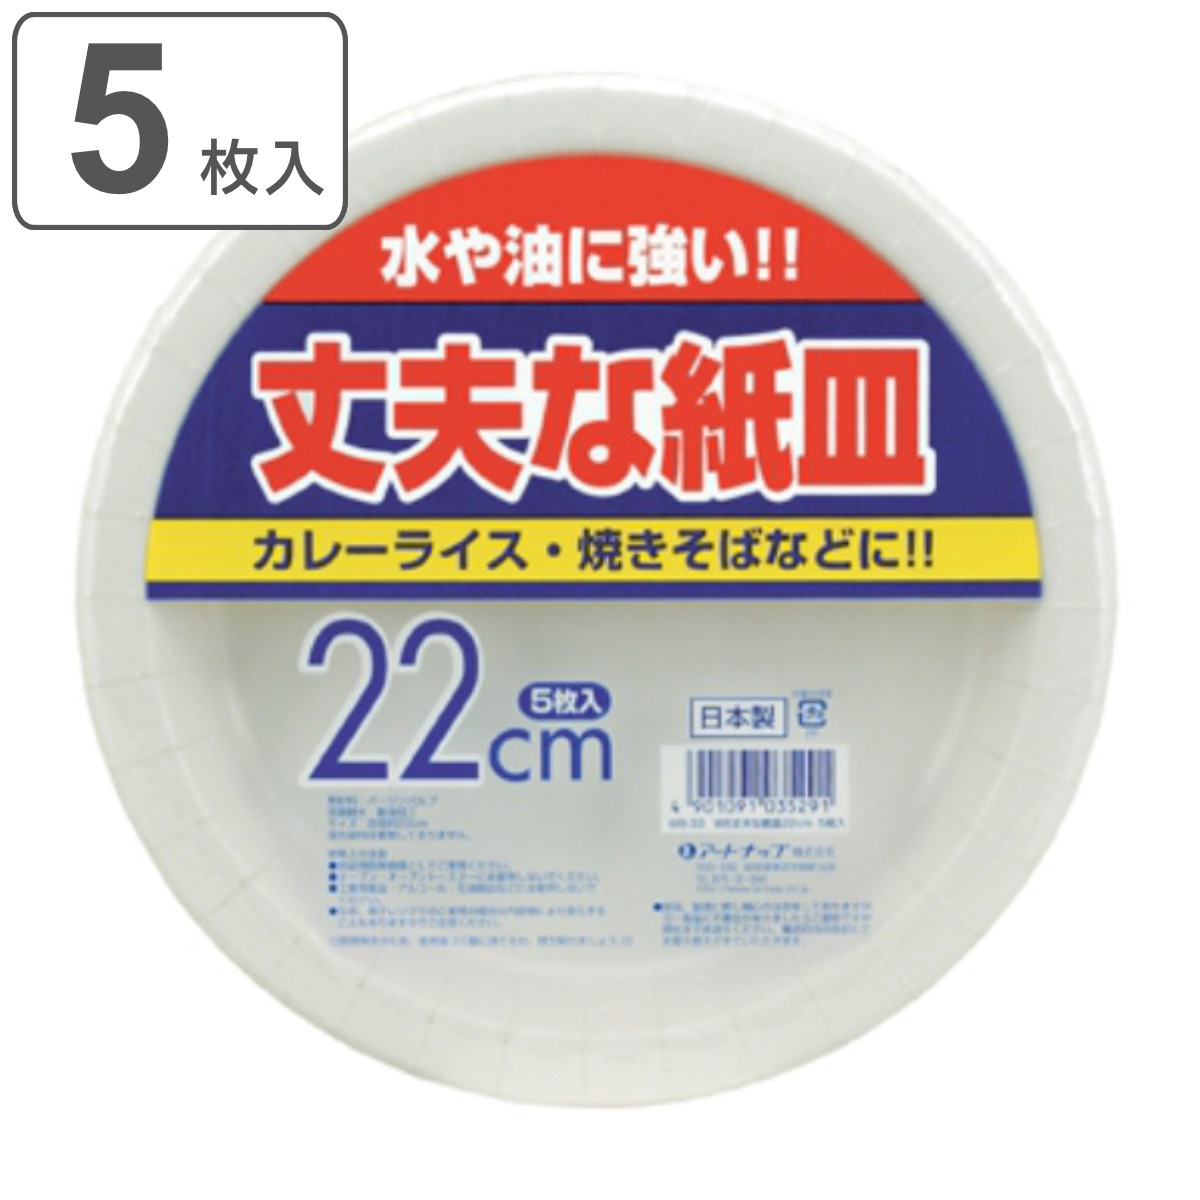 ペーパーボウル/使い捨て食器 〔ホワイト 410ml 20個入〕 BASIC´S 日本